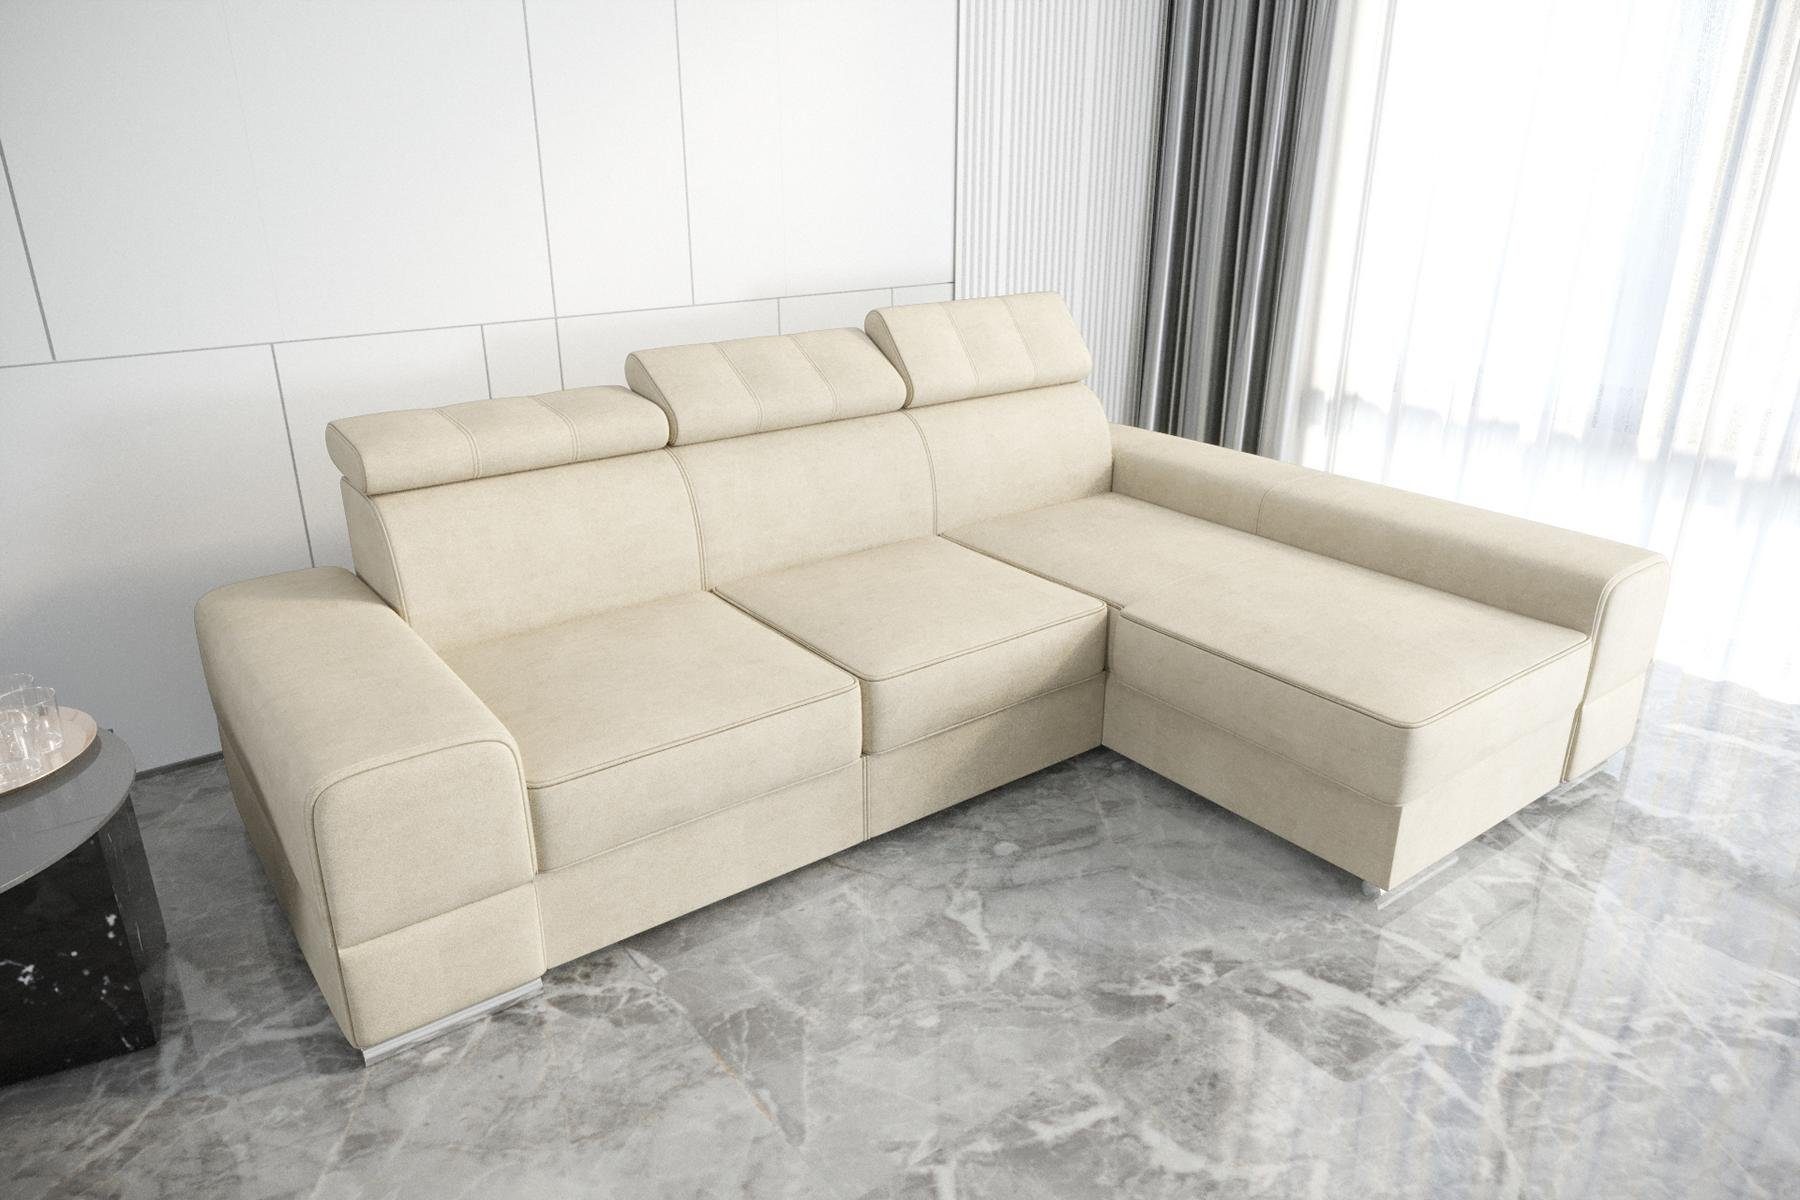 JVmoebel Ecksofa Designer Beiges Ecksofa L-Form Luxus Couch Wohnzimmer Möbel Neu, Made in Europe